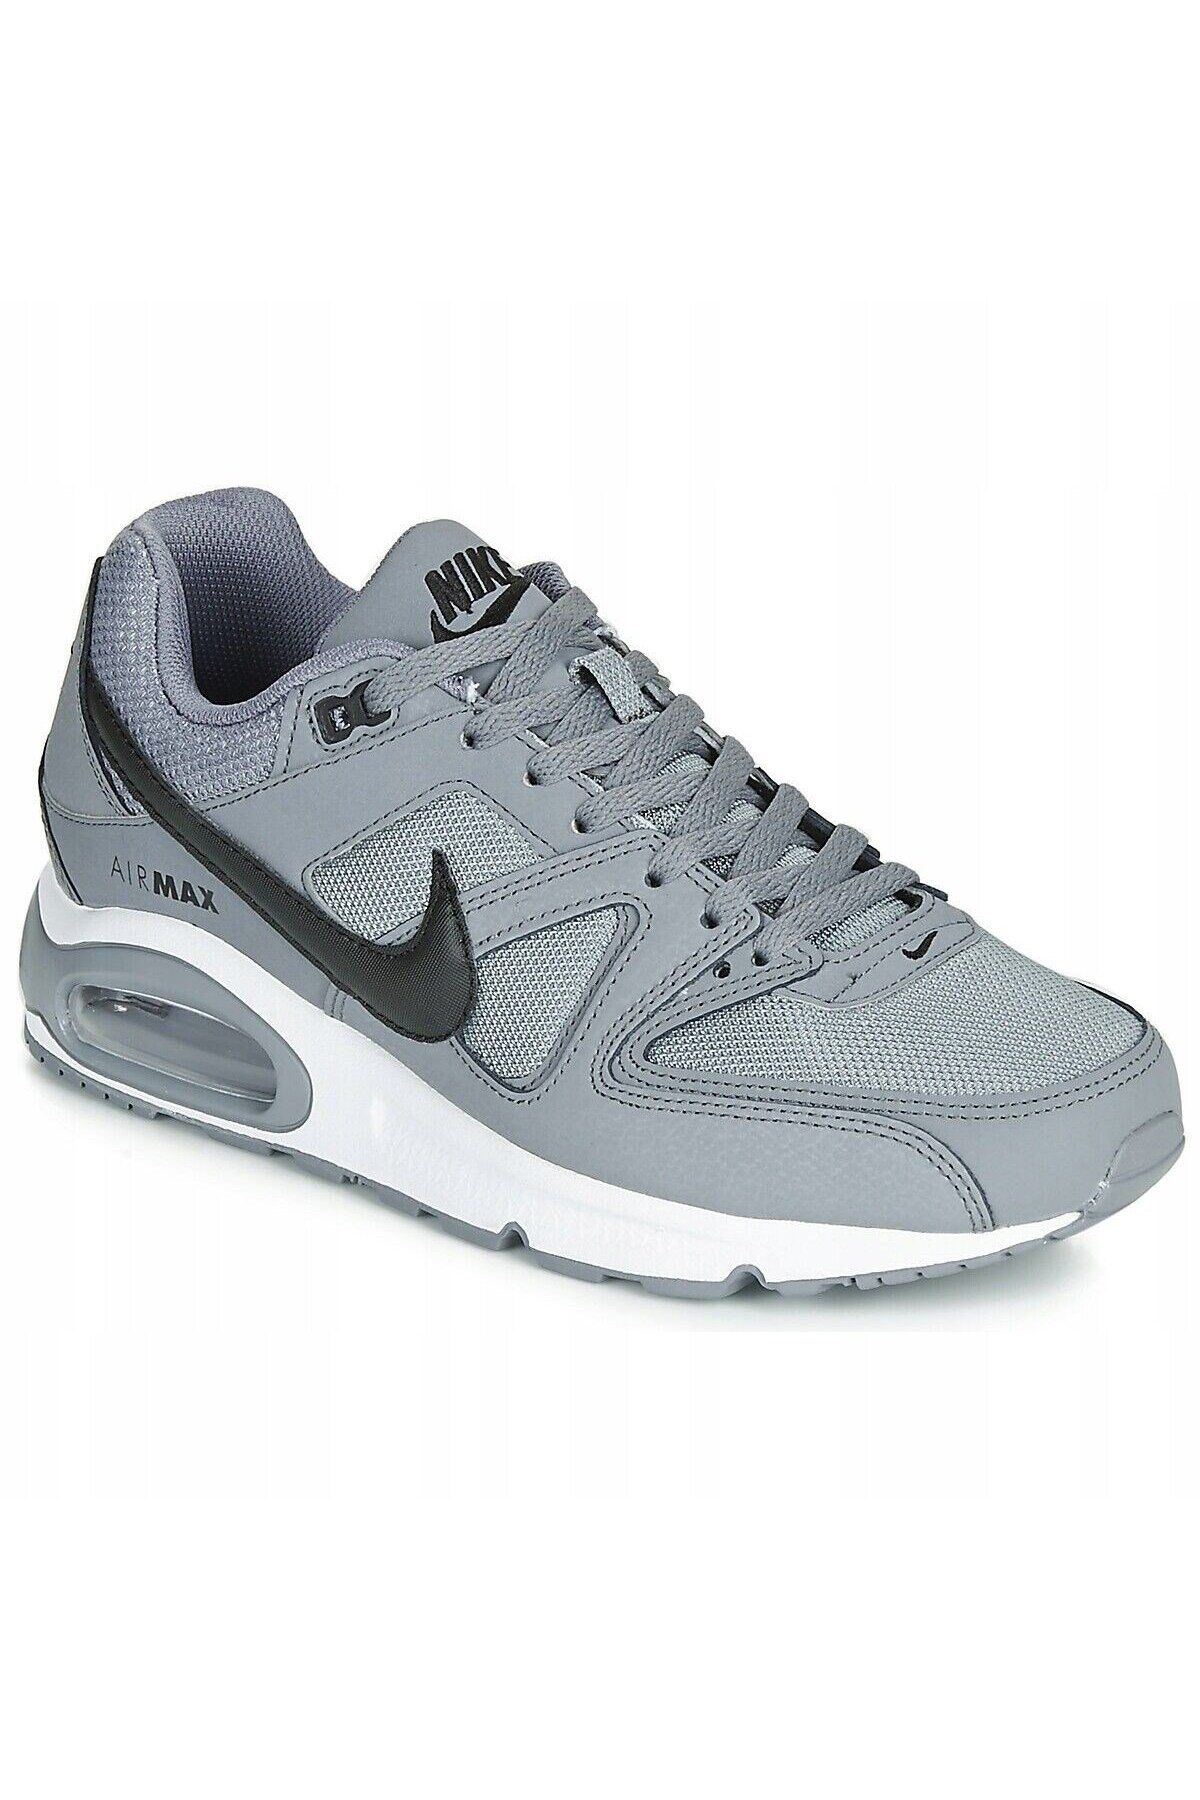 Nike Air Max Command Erkek Günlük Spor Ayakkabı 629993-012